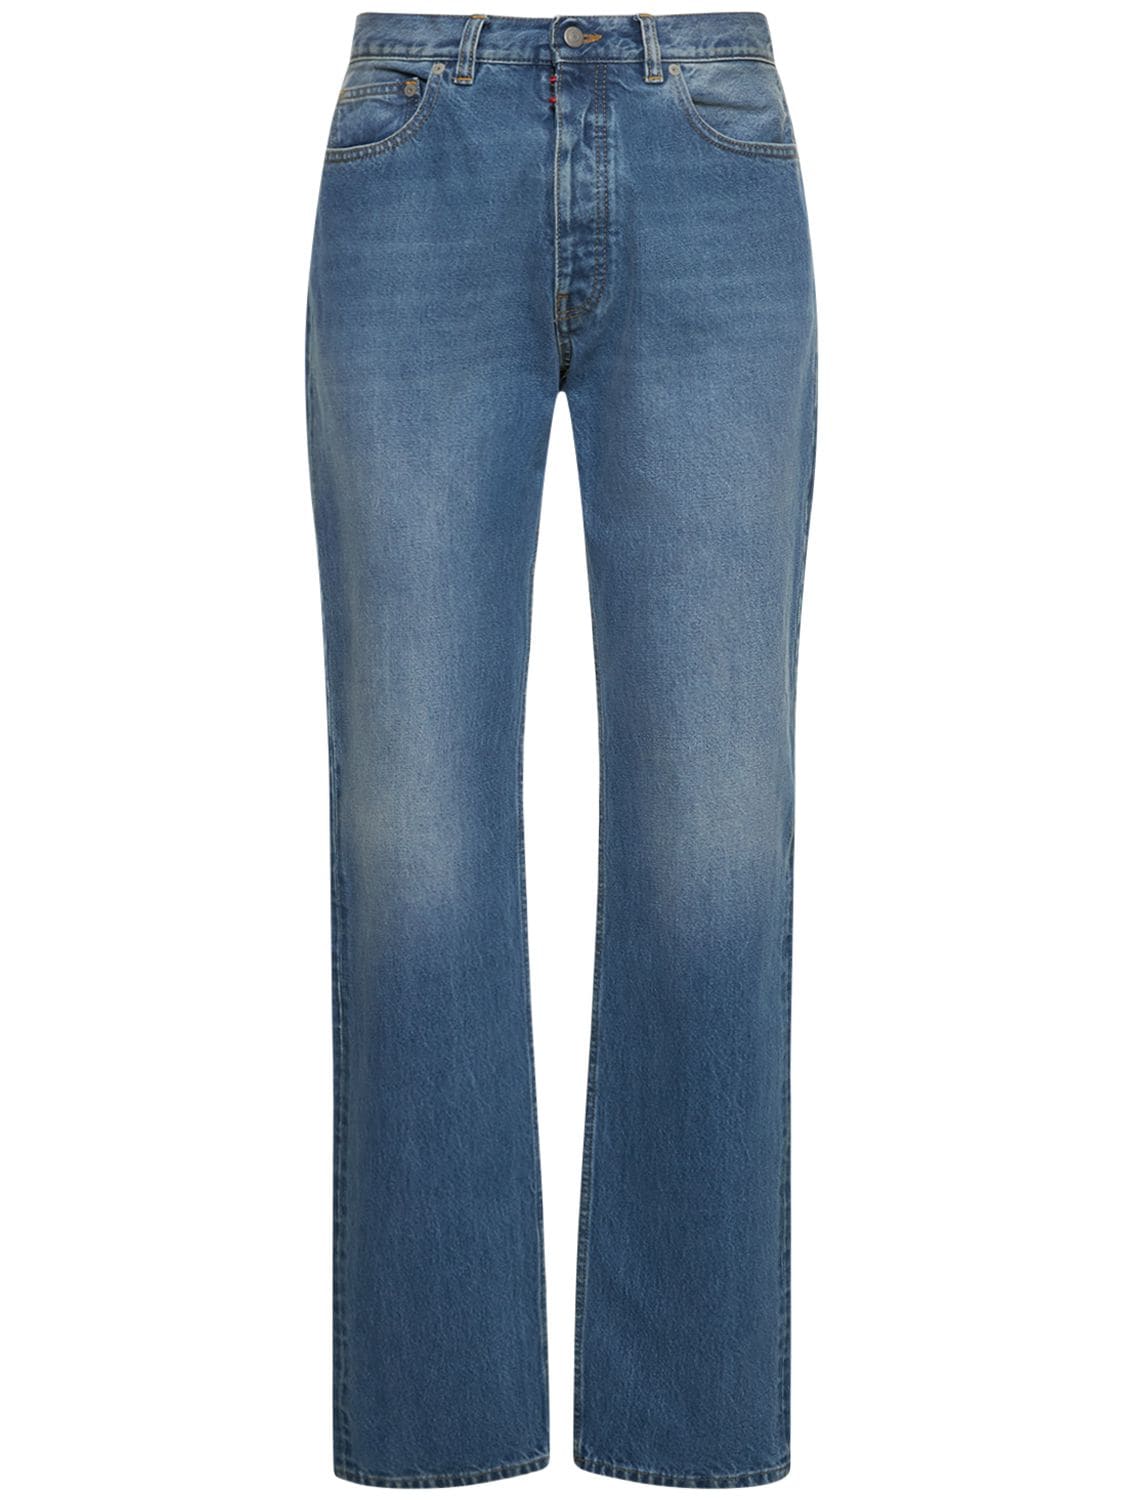 Jeans Aus Baumwolldenim Mit 5 Taschen - MAISON MARGIELA - Modalova